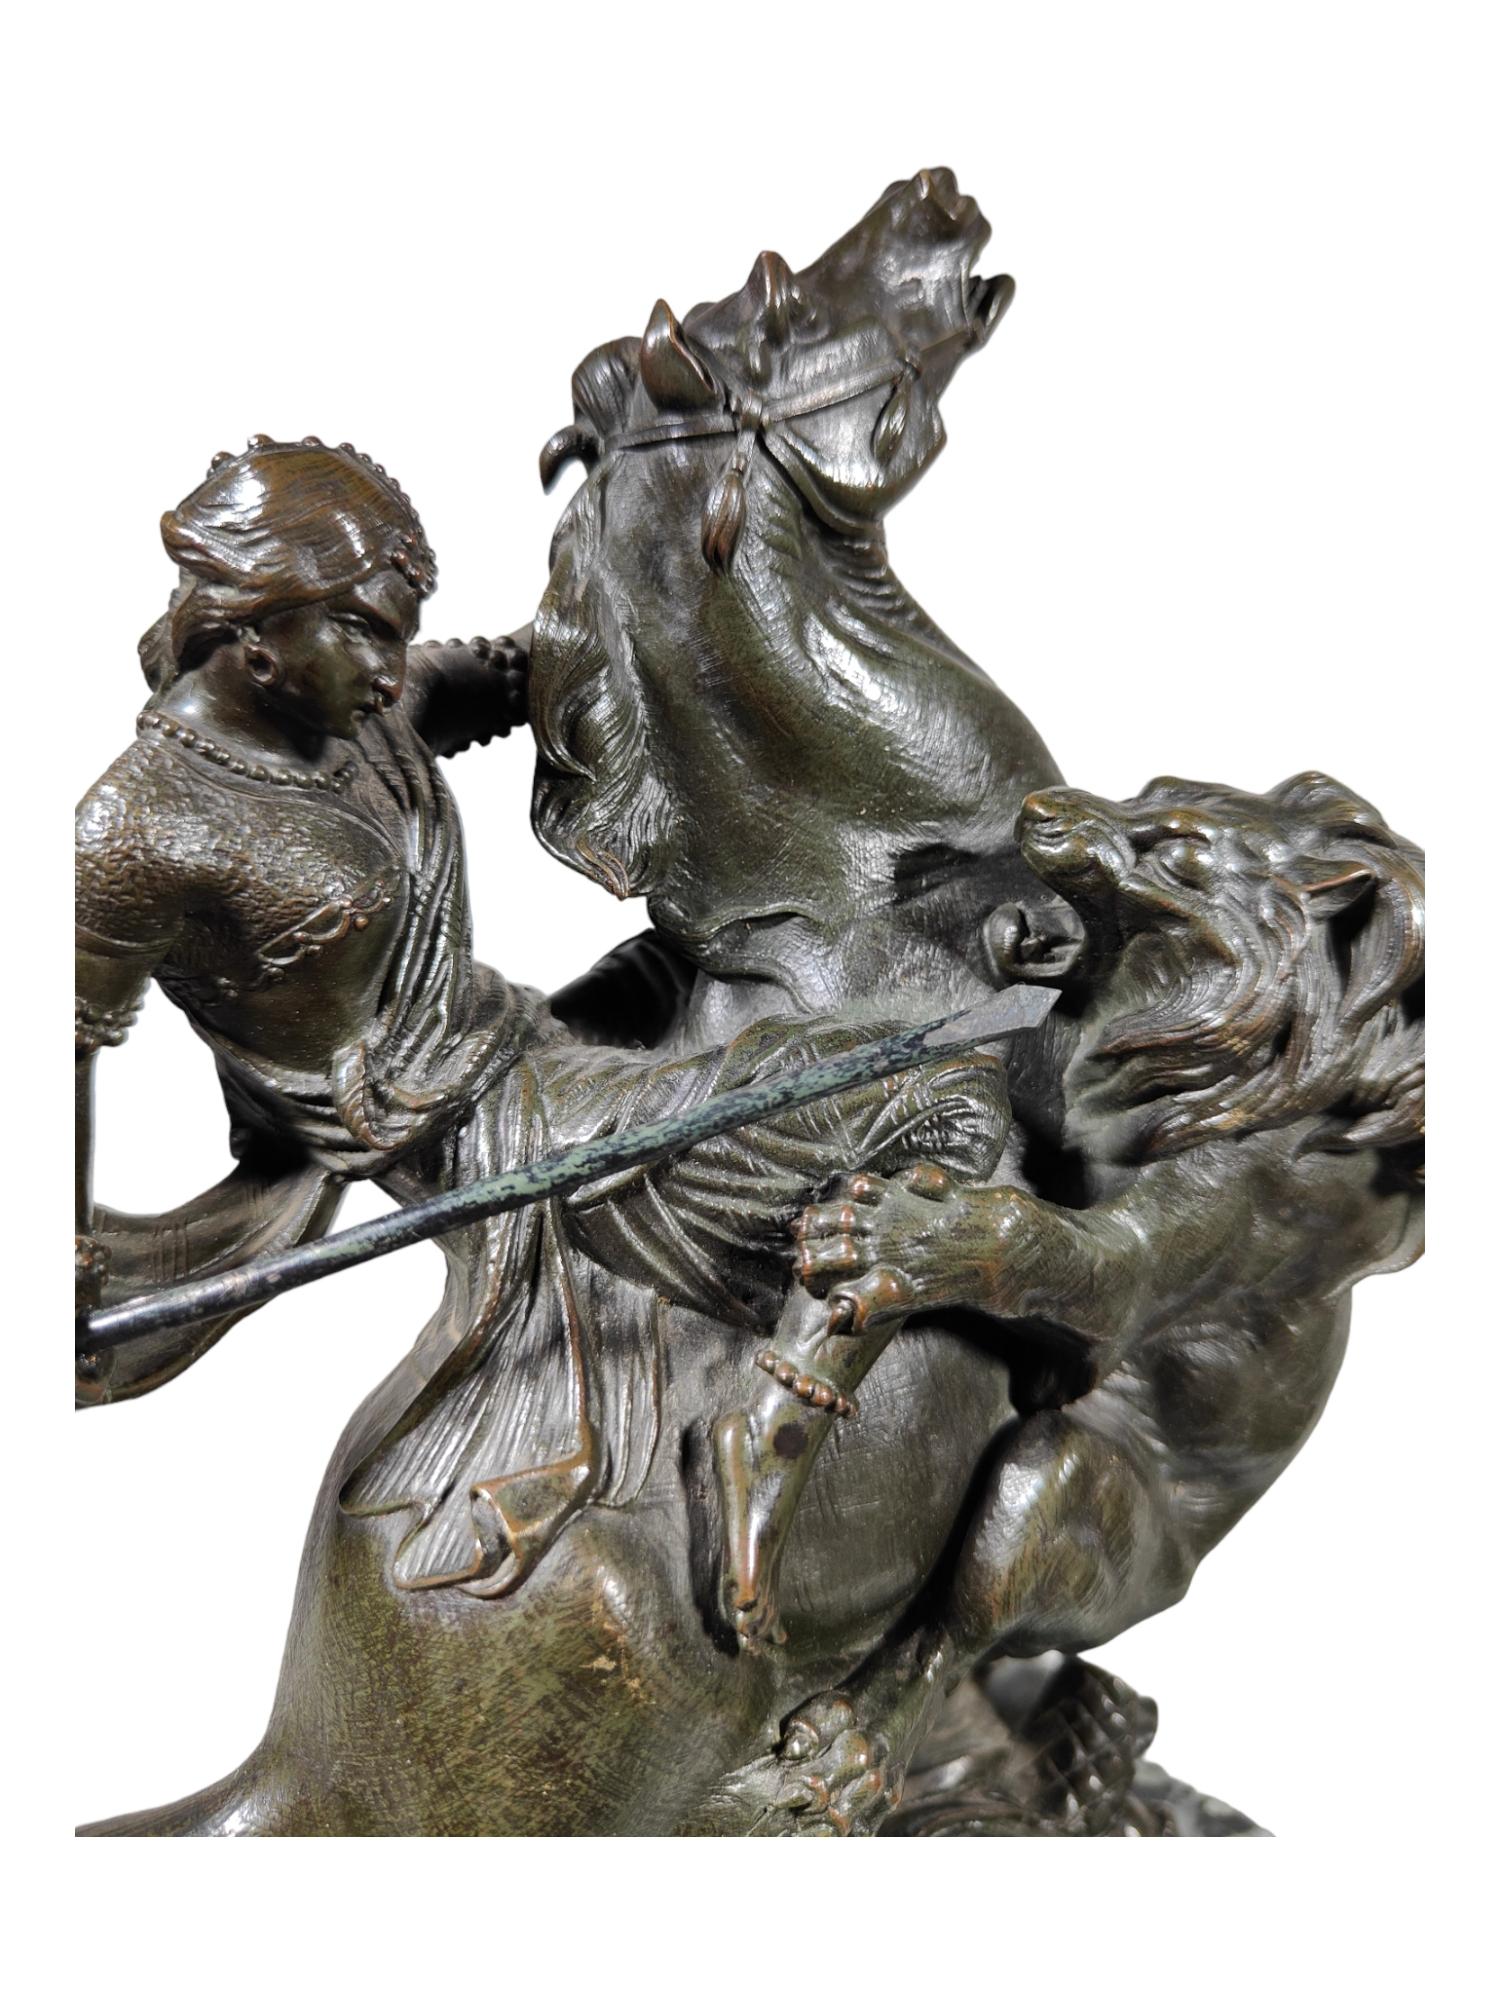 Amazone à cheval attaquée par un tigre August-Karl-Edouard Kiss Statue en bronze Allemagne
L'Amazone montée attaquée par un LION est l'œuvre du sculpteur allemand Auguste Kiss. Pris au milieu de l'attaque, les personnages traduisent la violence et